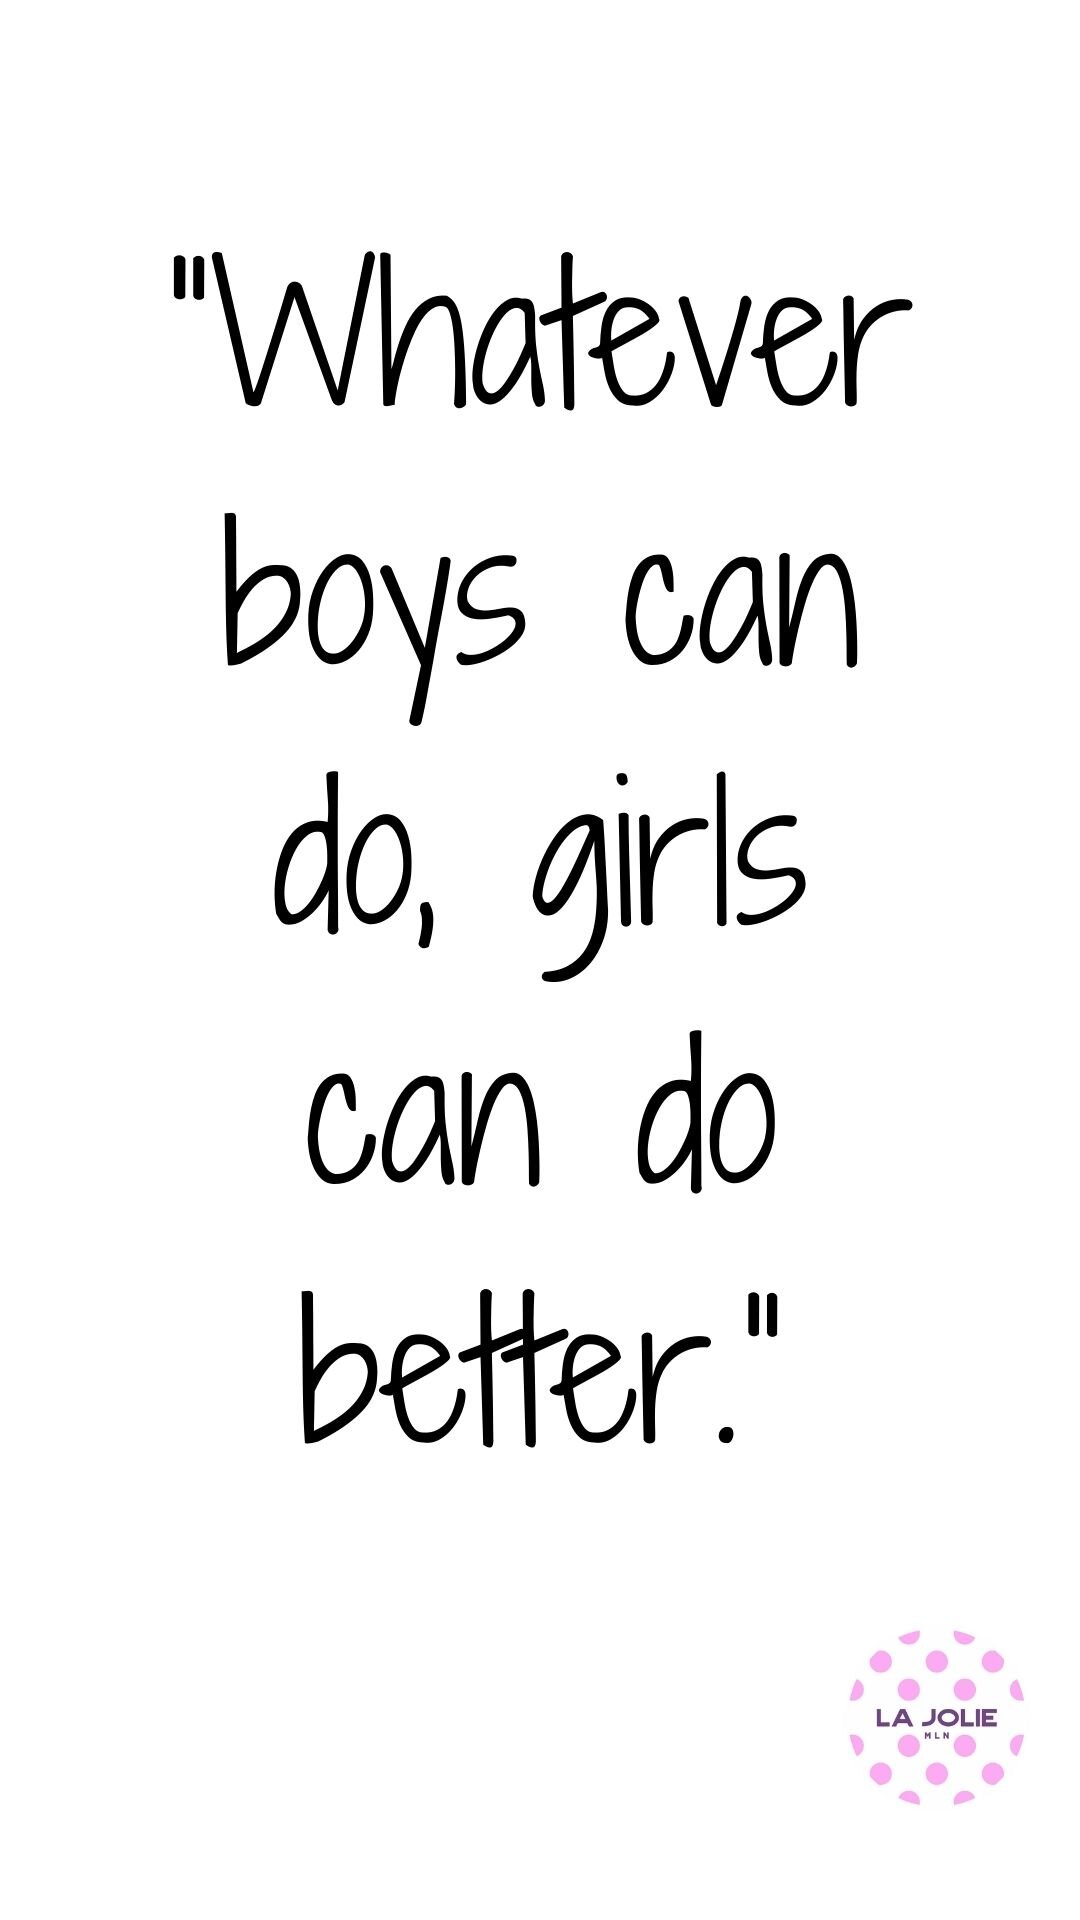 Whatever-boys-can-do-girls-can-do-better.jpg